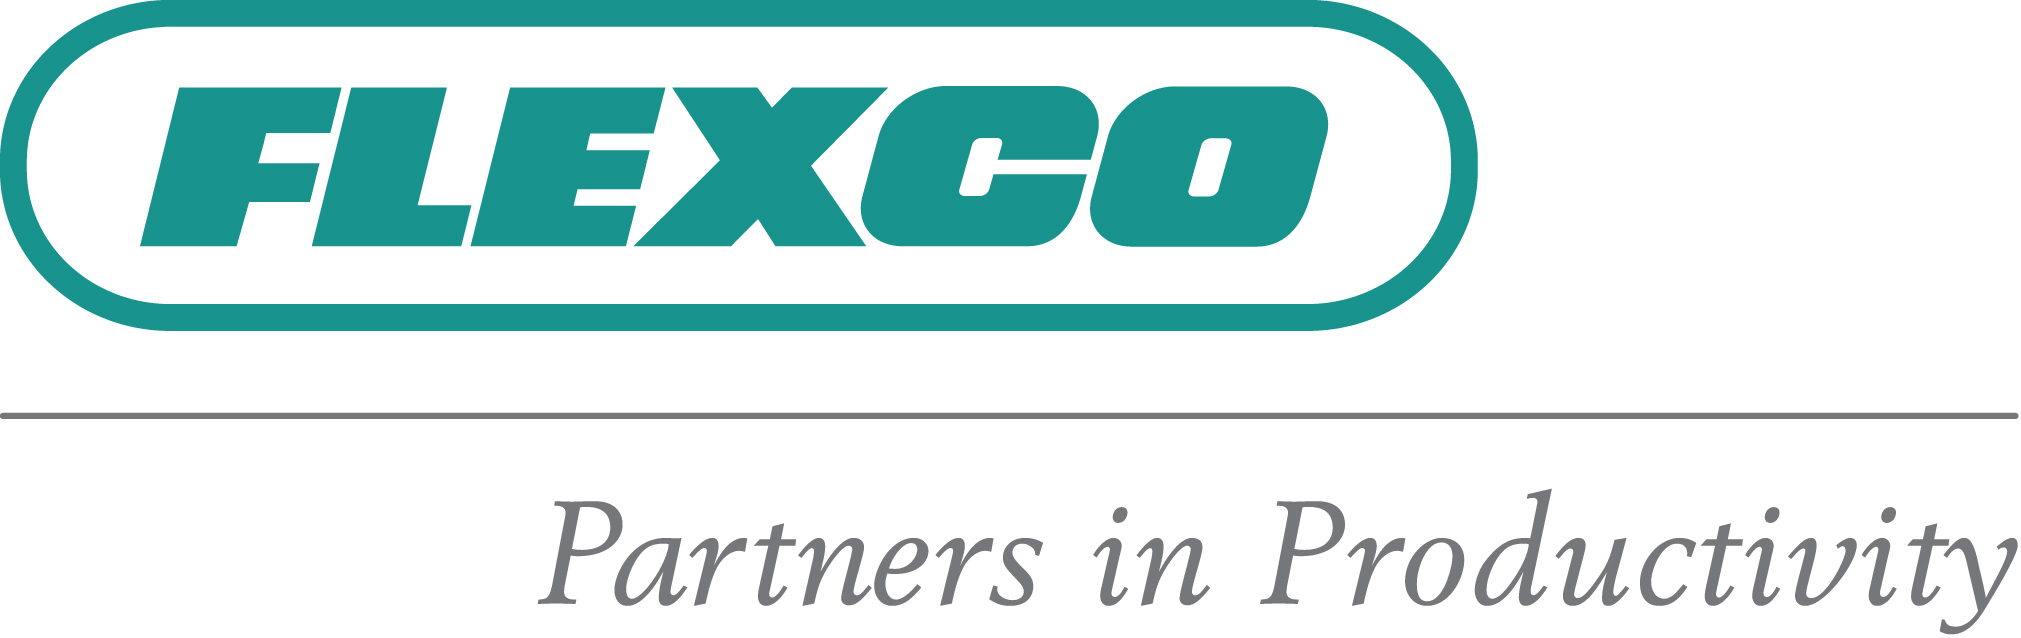 Flexco-Logo